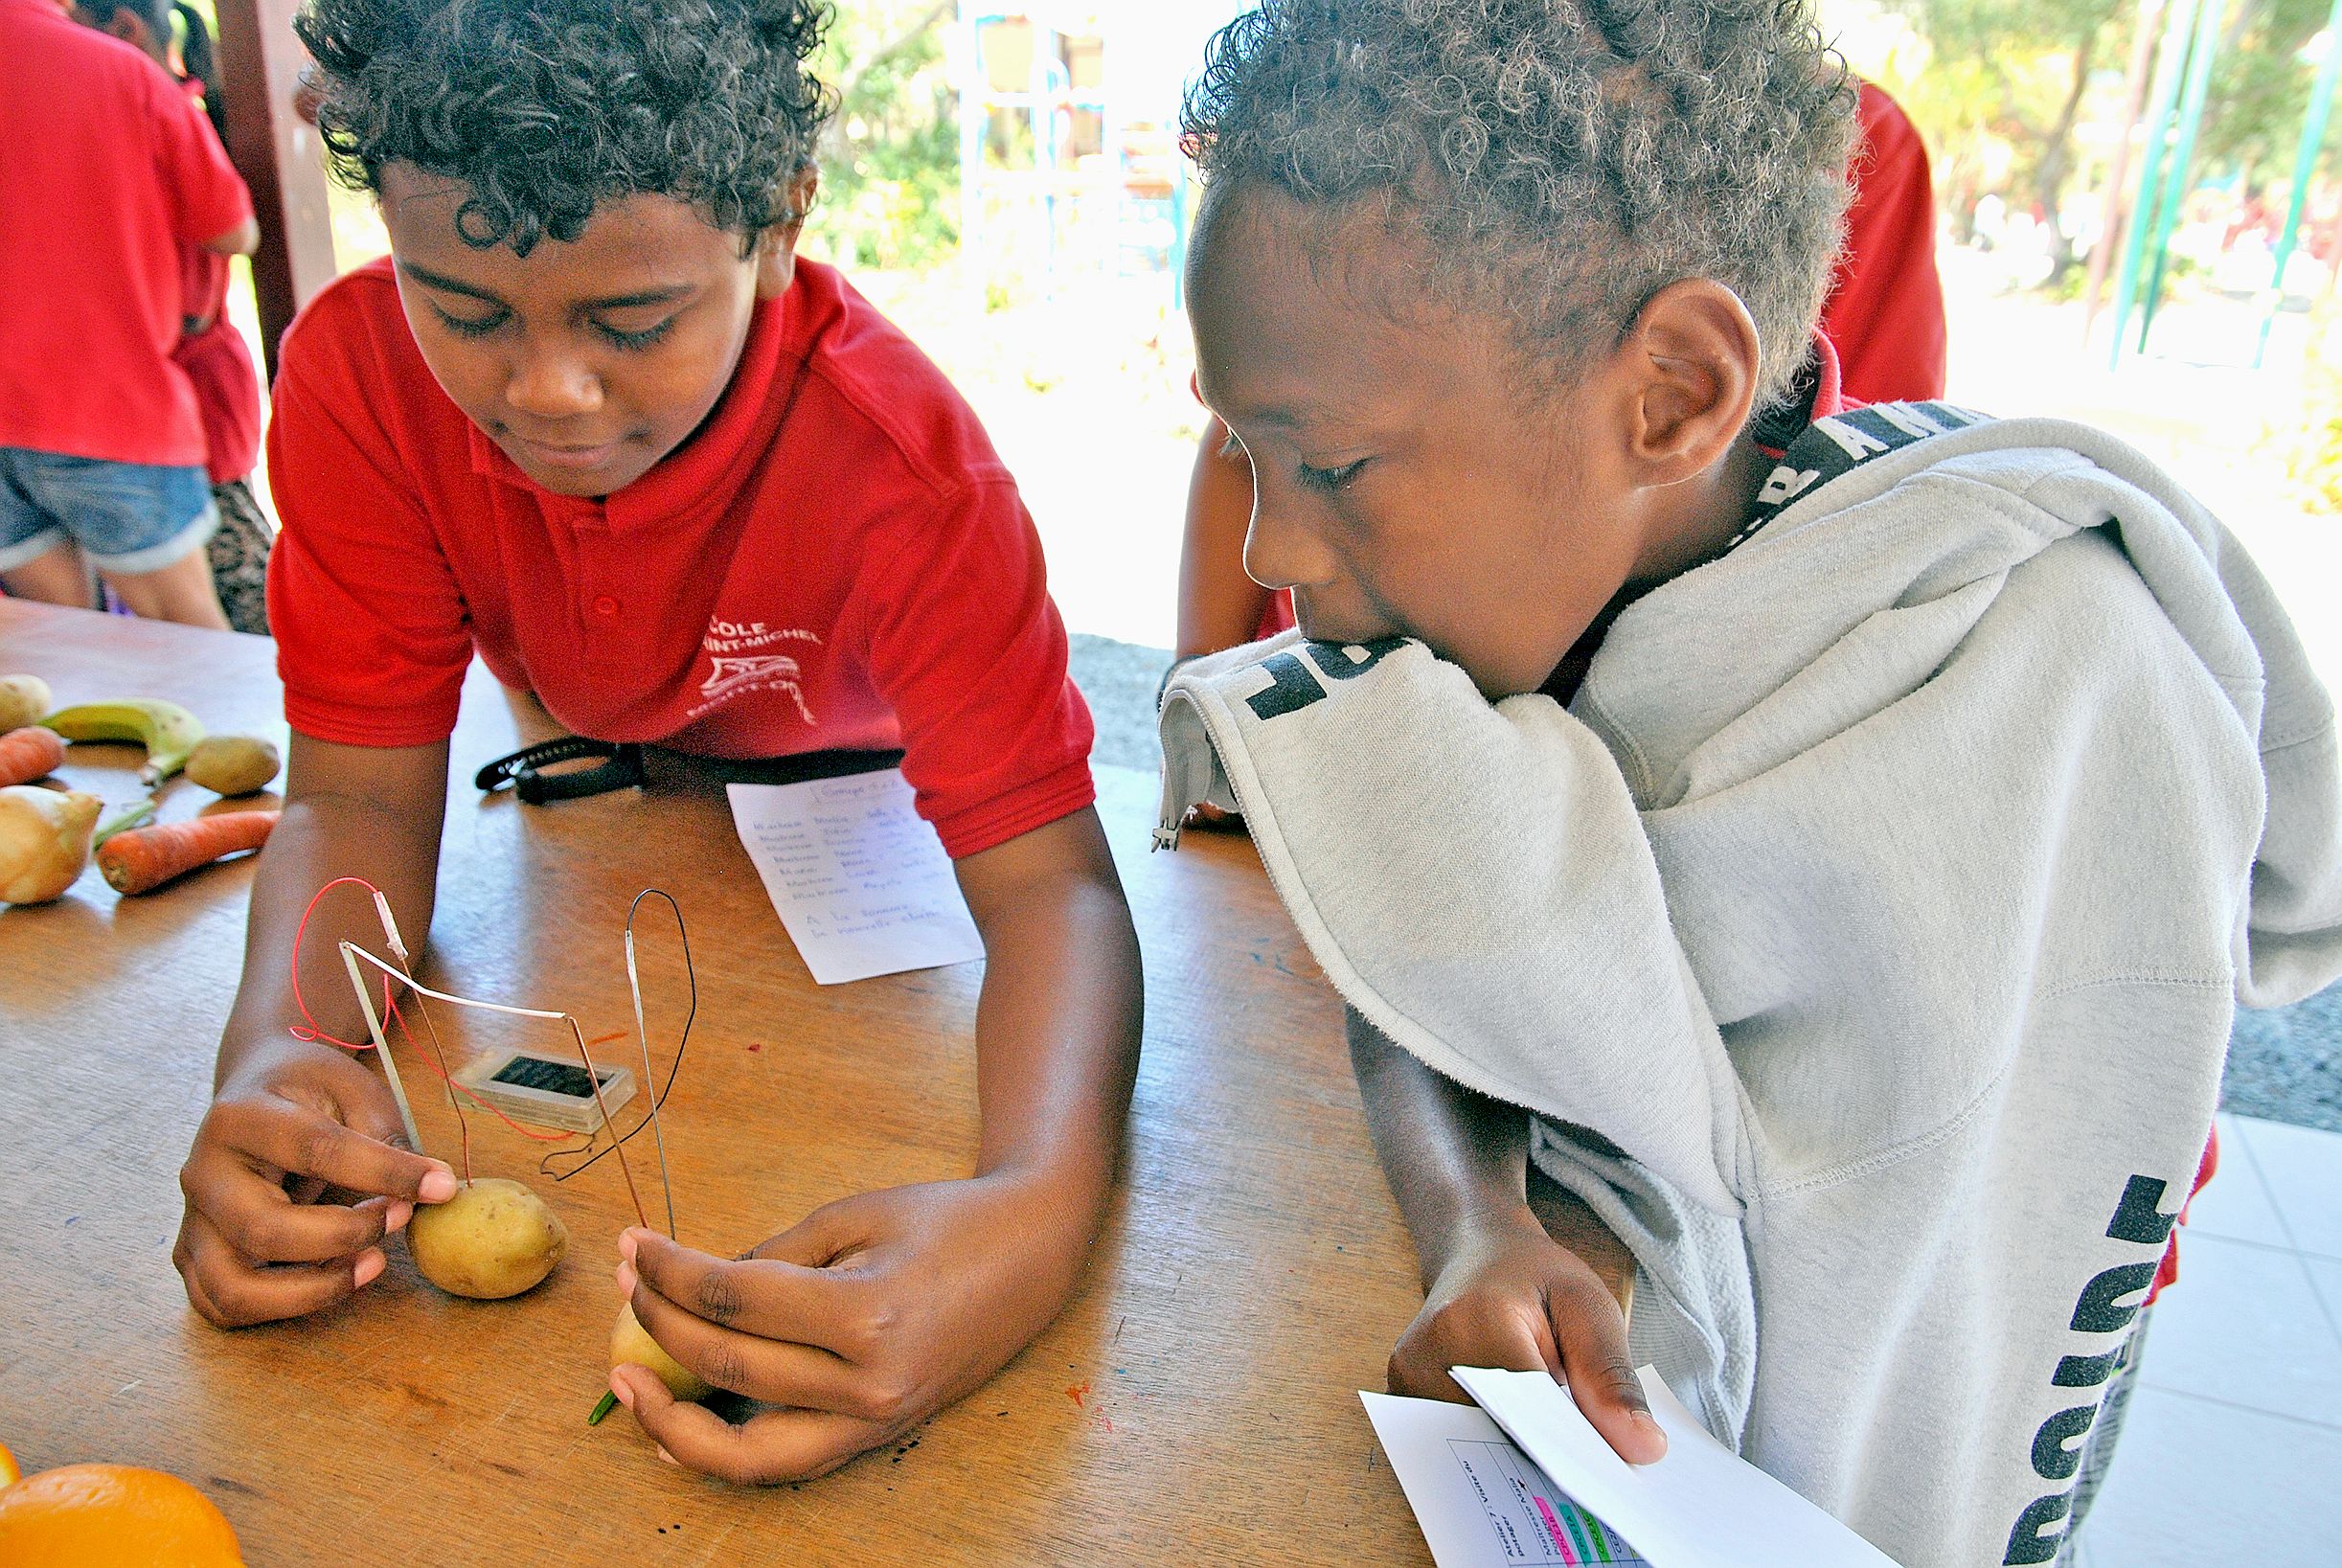 Avec deux électrodes raccordées à une horloge digitale, les enfants ont découvert que les pommes de terre pouvaient produire de l’électricité, tout comme les bananes mûres.